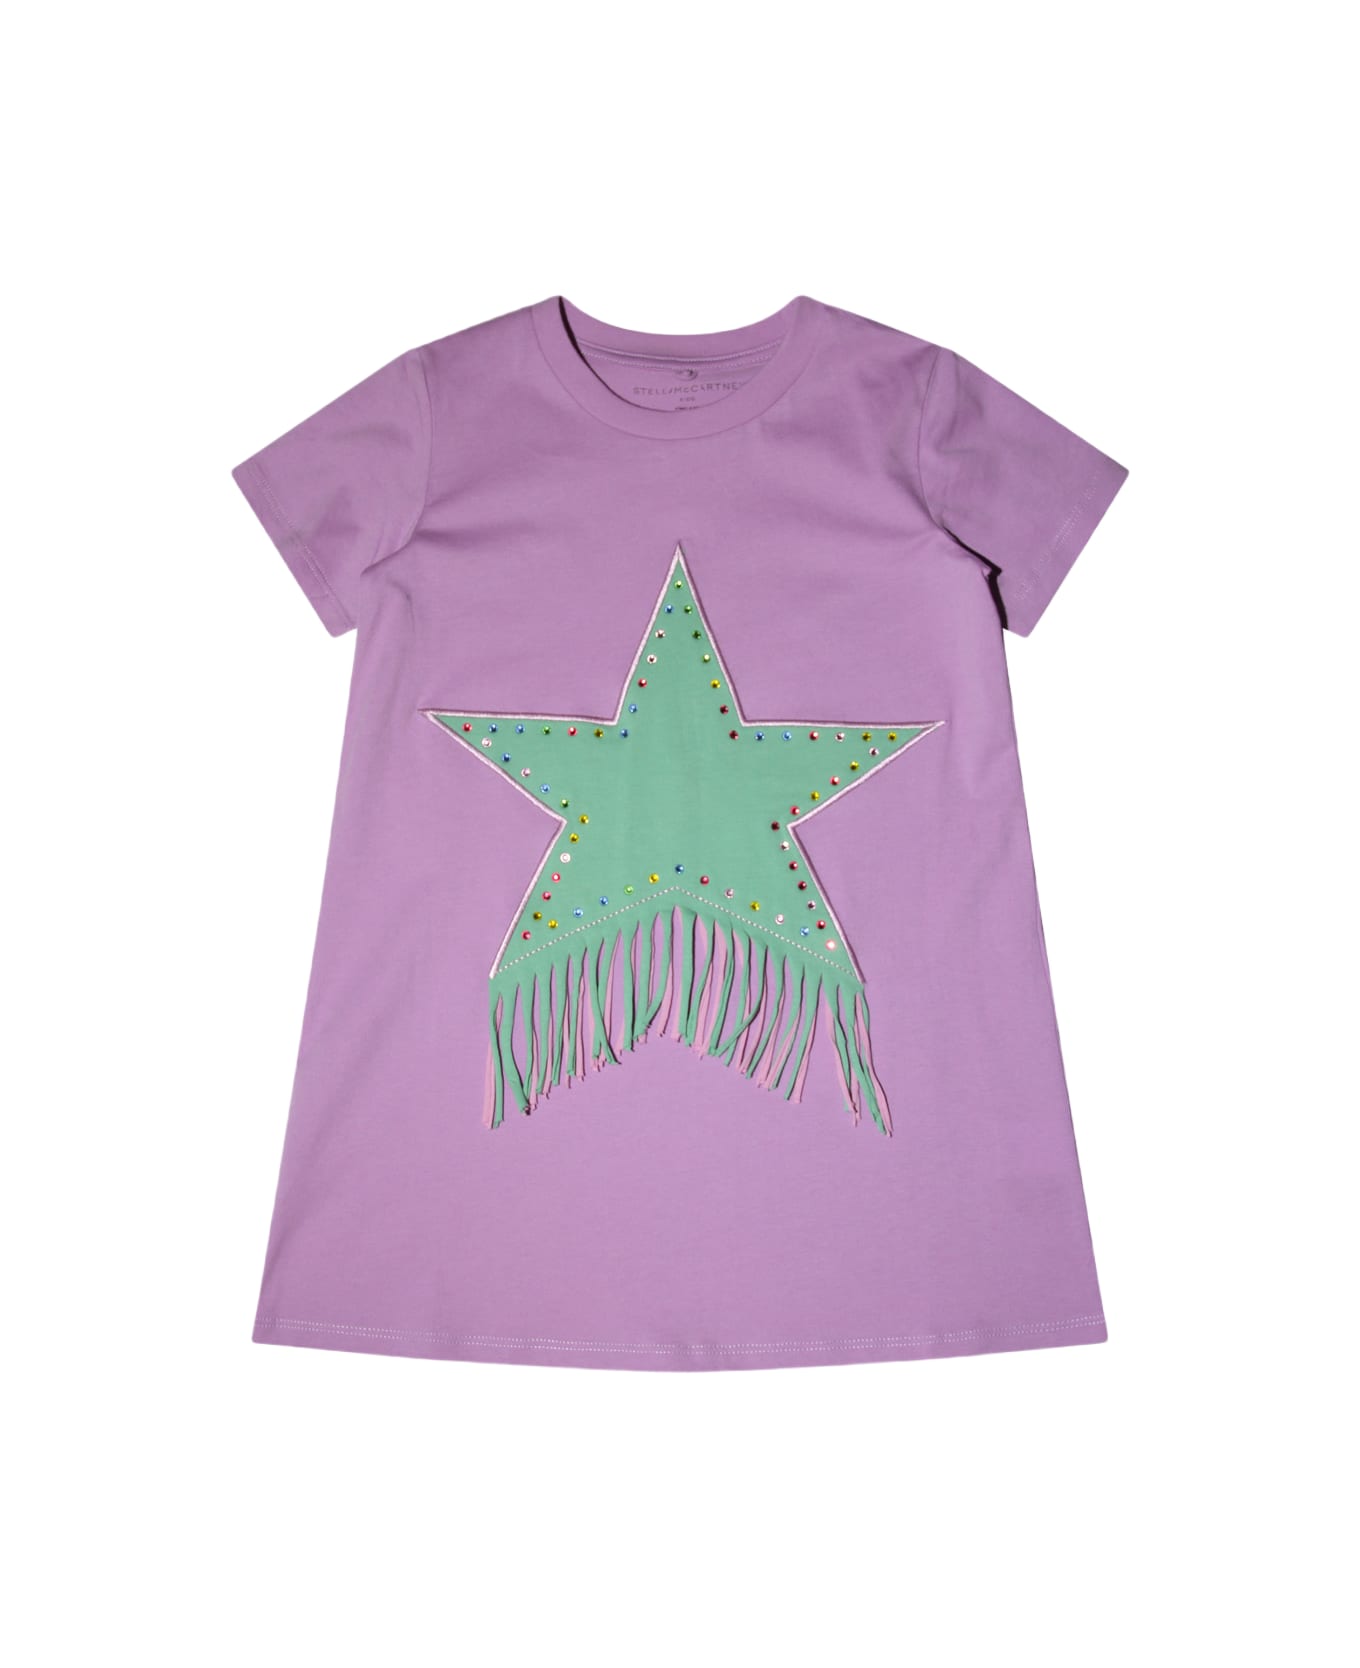 Stella McCartney Purple And Green Cotton T-shirt - Purple